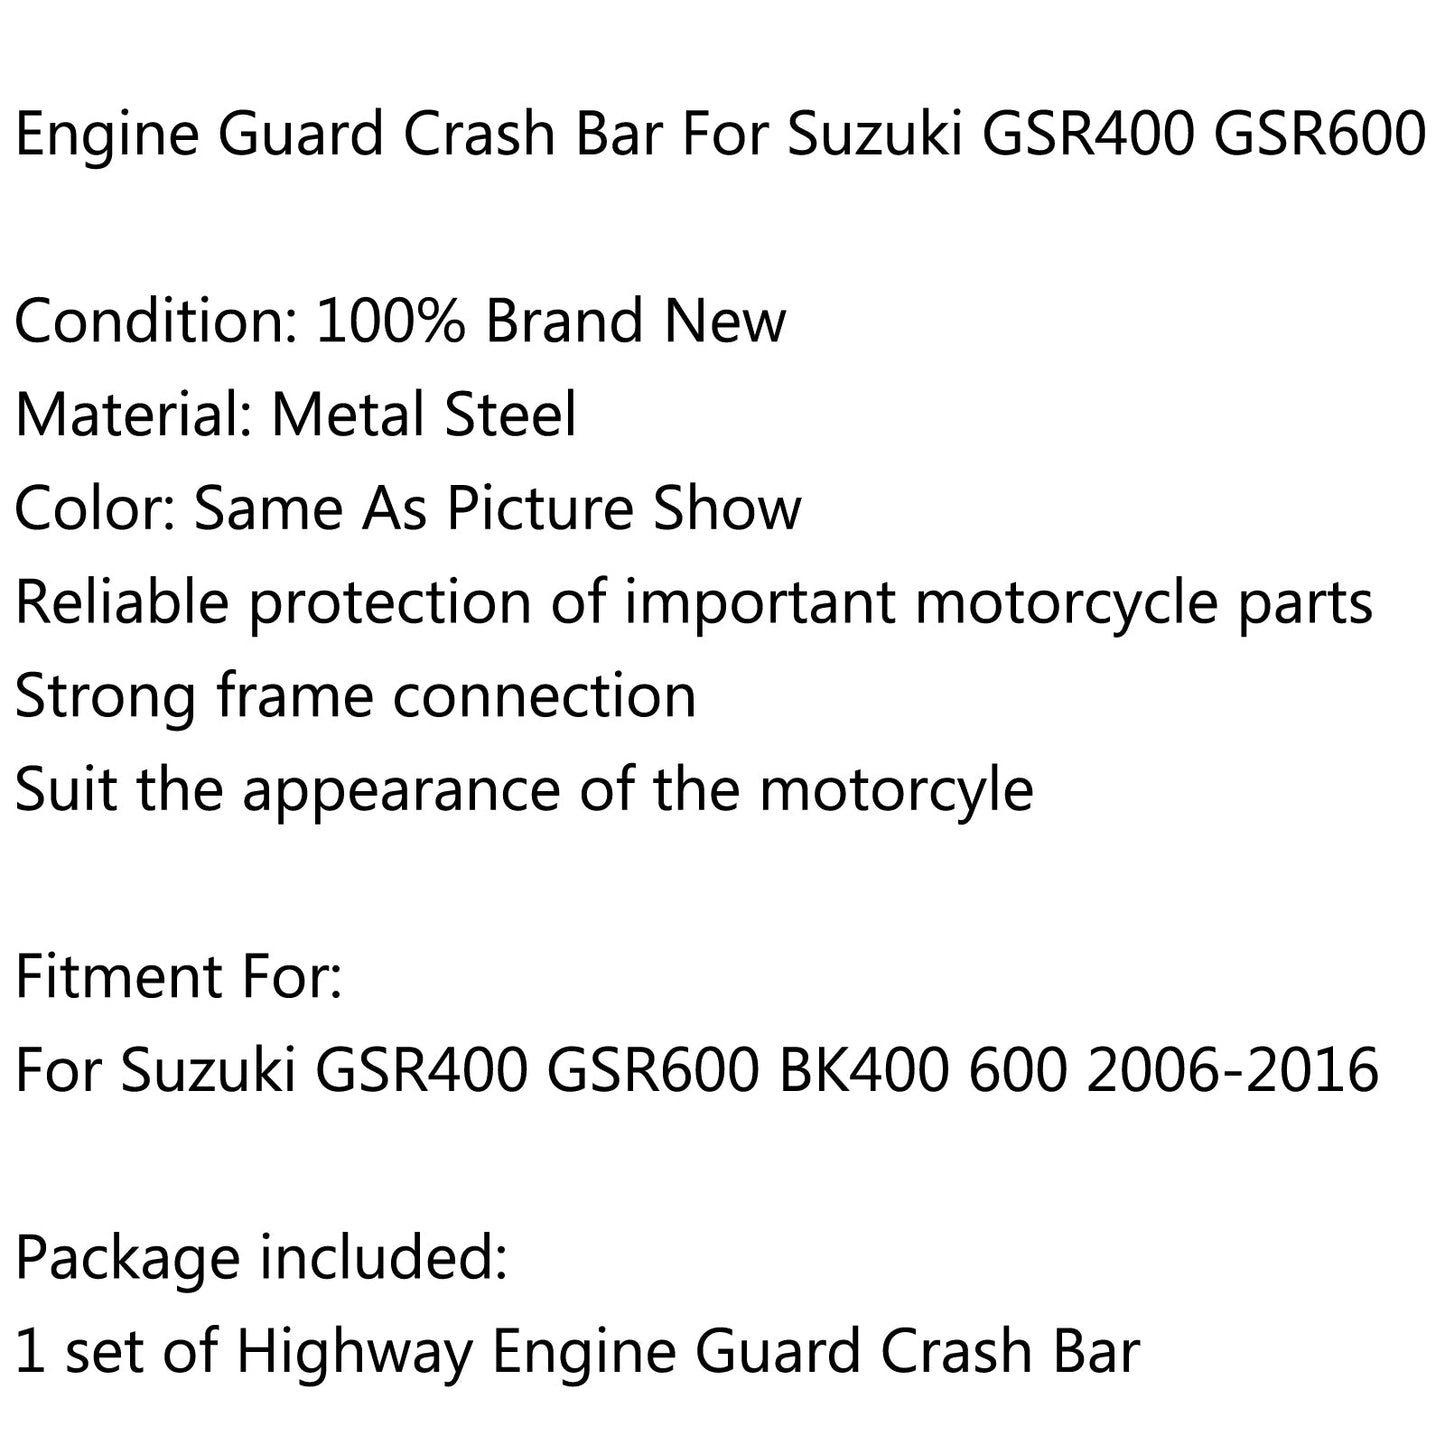 Highway Engine Guard Crash Bars for Suzuki GSR400 GSR600 BK400 600 06-16 Generic